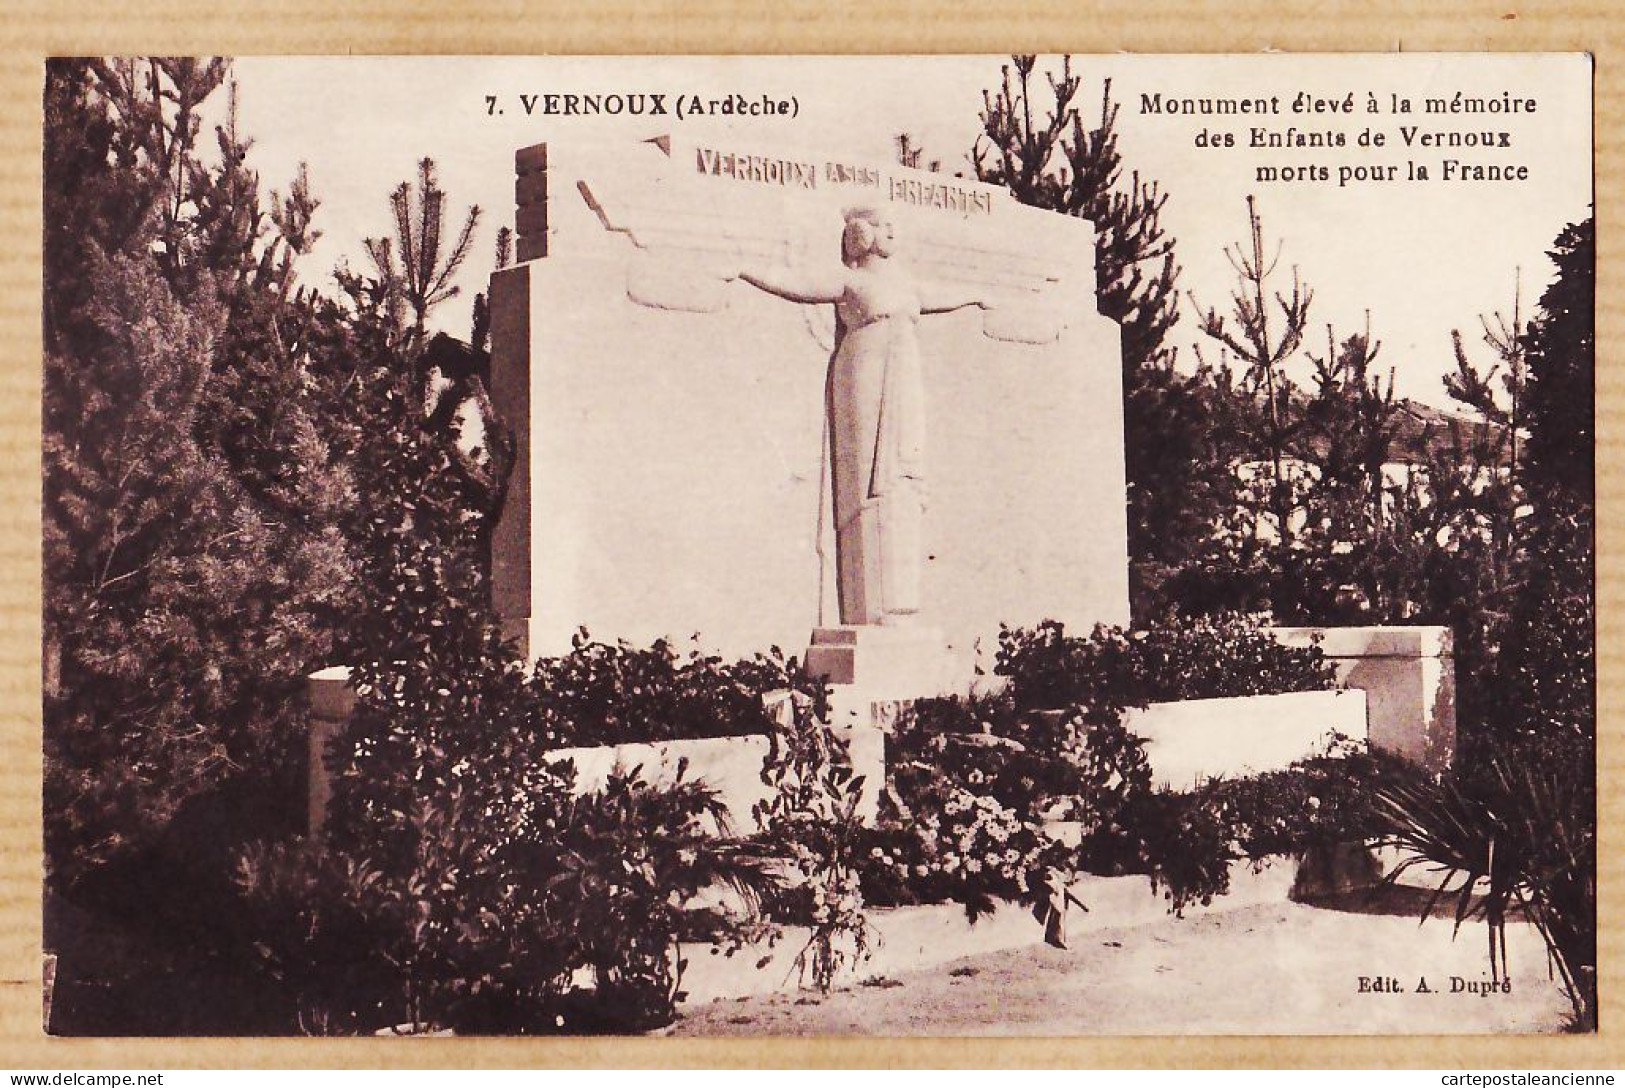 05591 ● VERNOUX 07-Ardèche Monument CpaWW1 élevé Mémoire Es Enfants Morts Pour La FRANCE 1931 De PRINSAC-DUPRE 7 - Vernoux